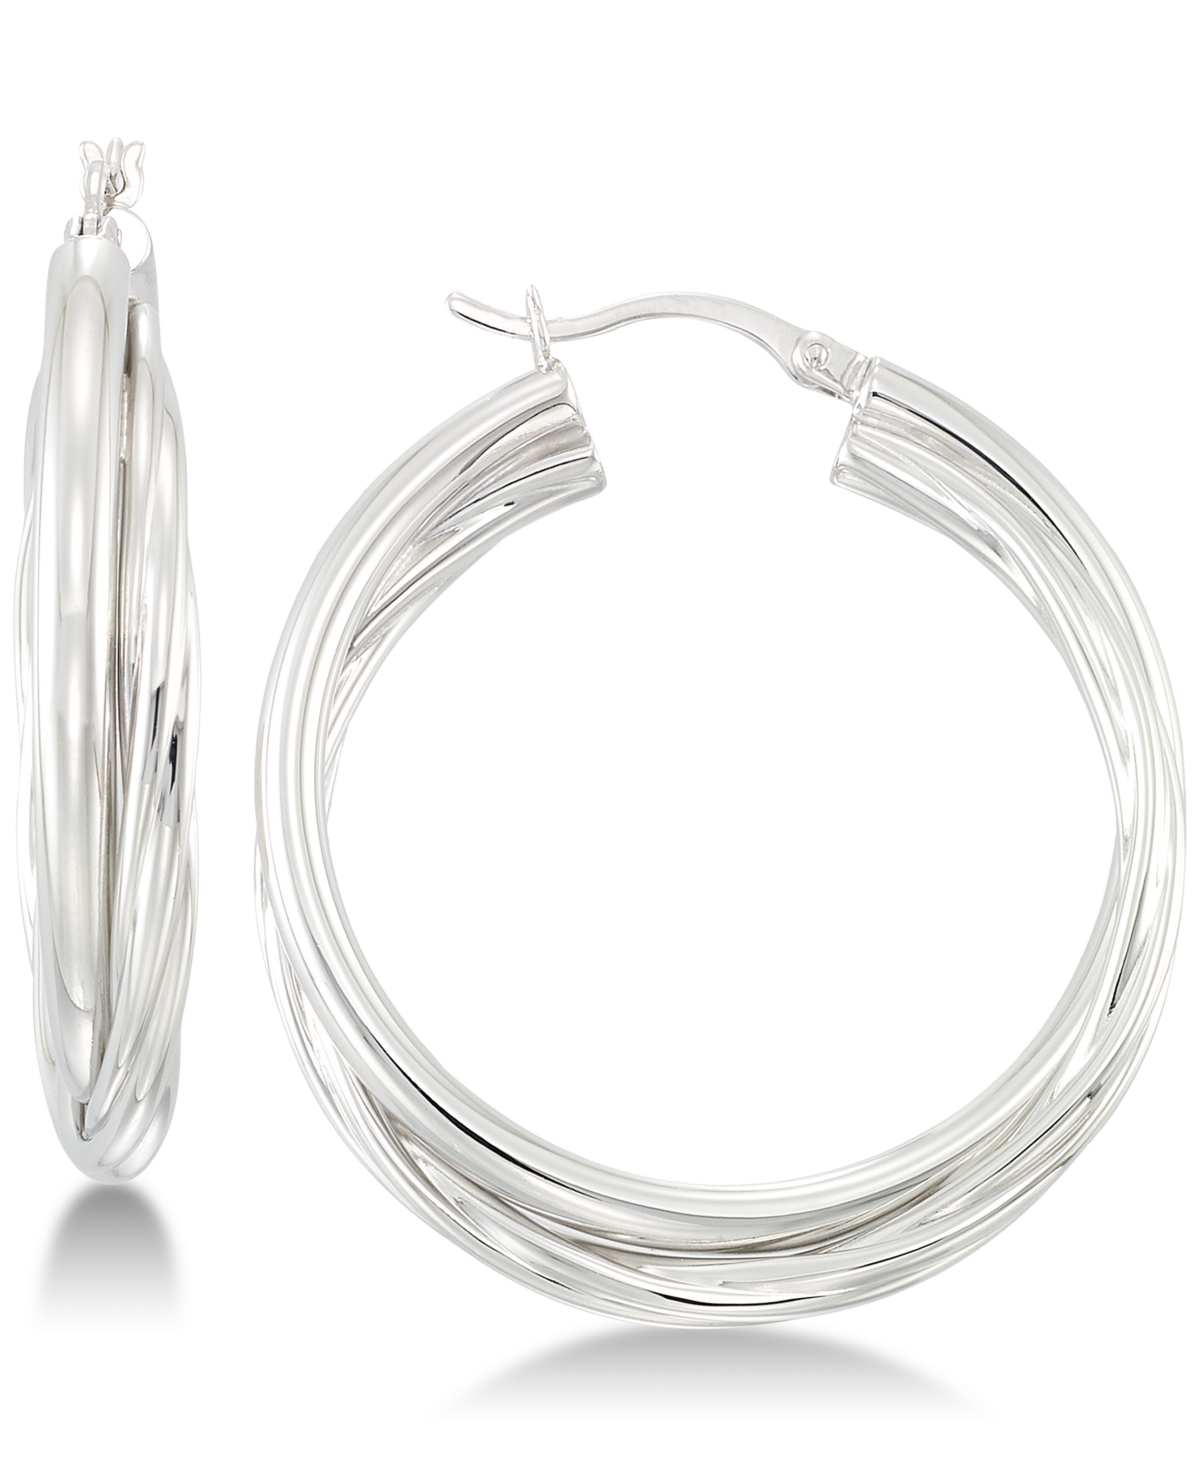 Double Twisted Hoop Earrings in Sterling Silver - Silver